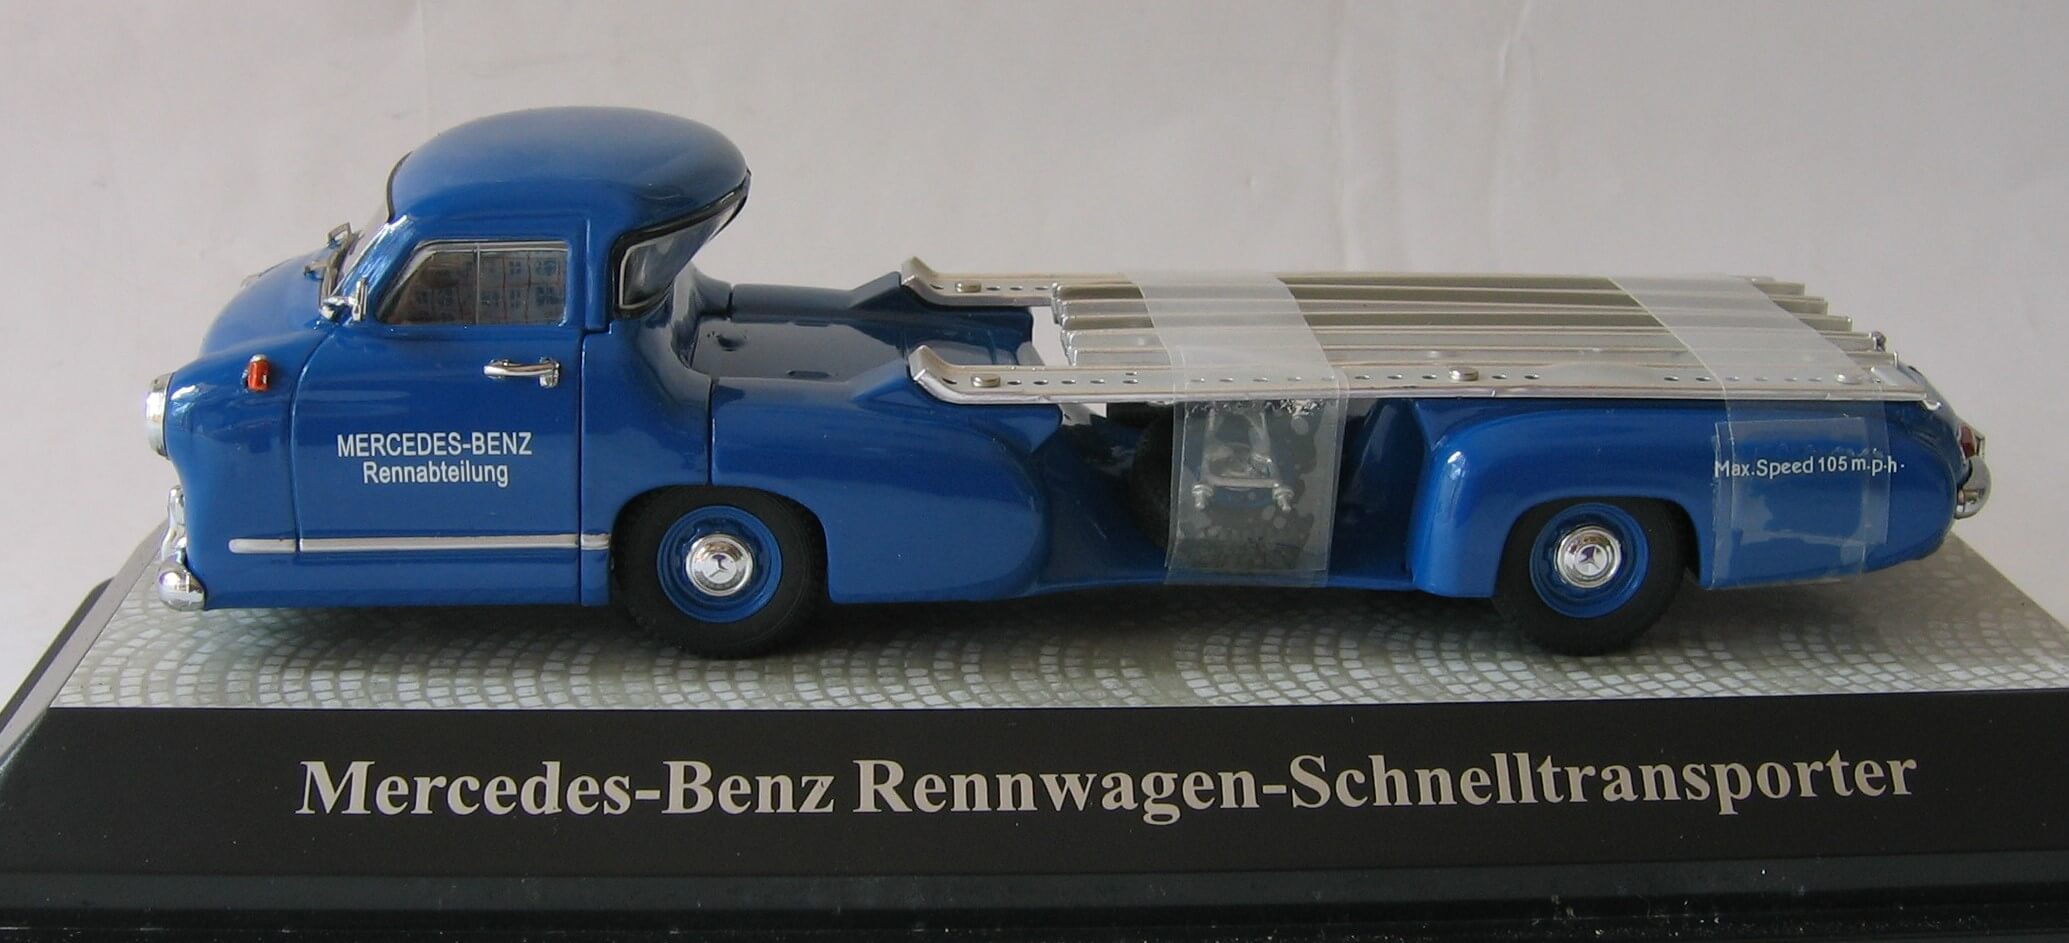 Mercedes Blue Wonder transporter